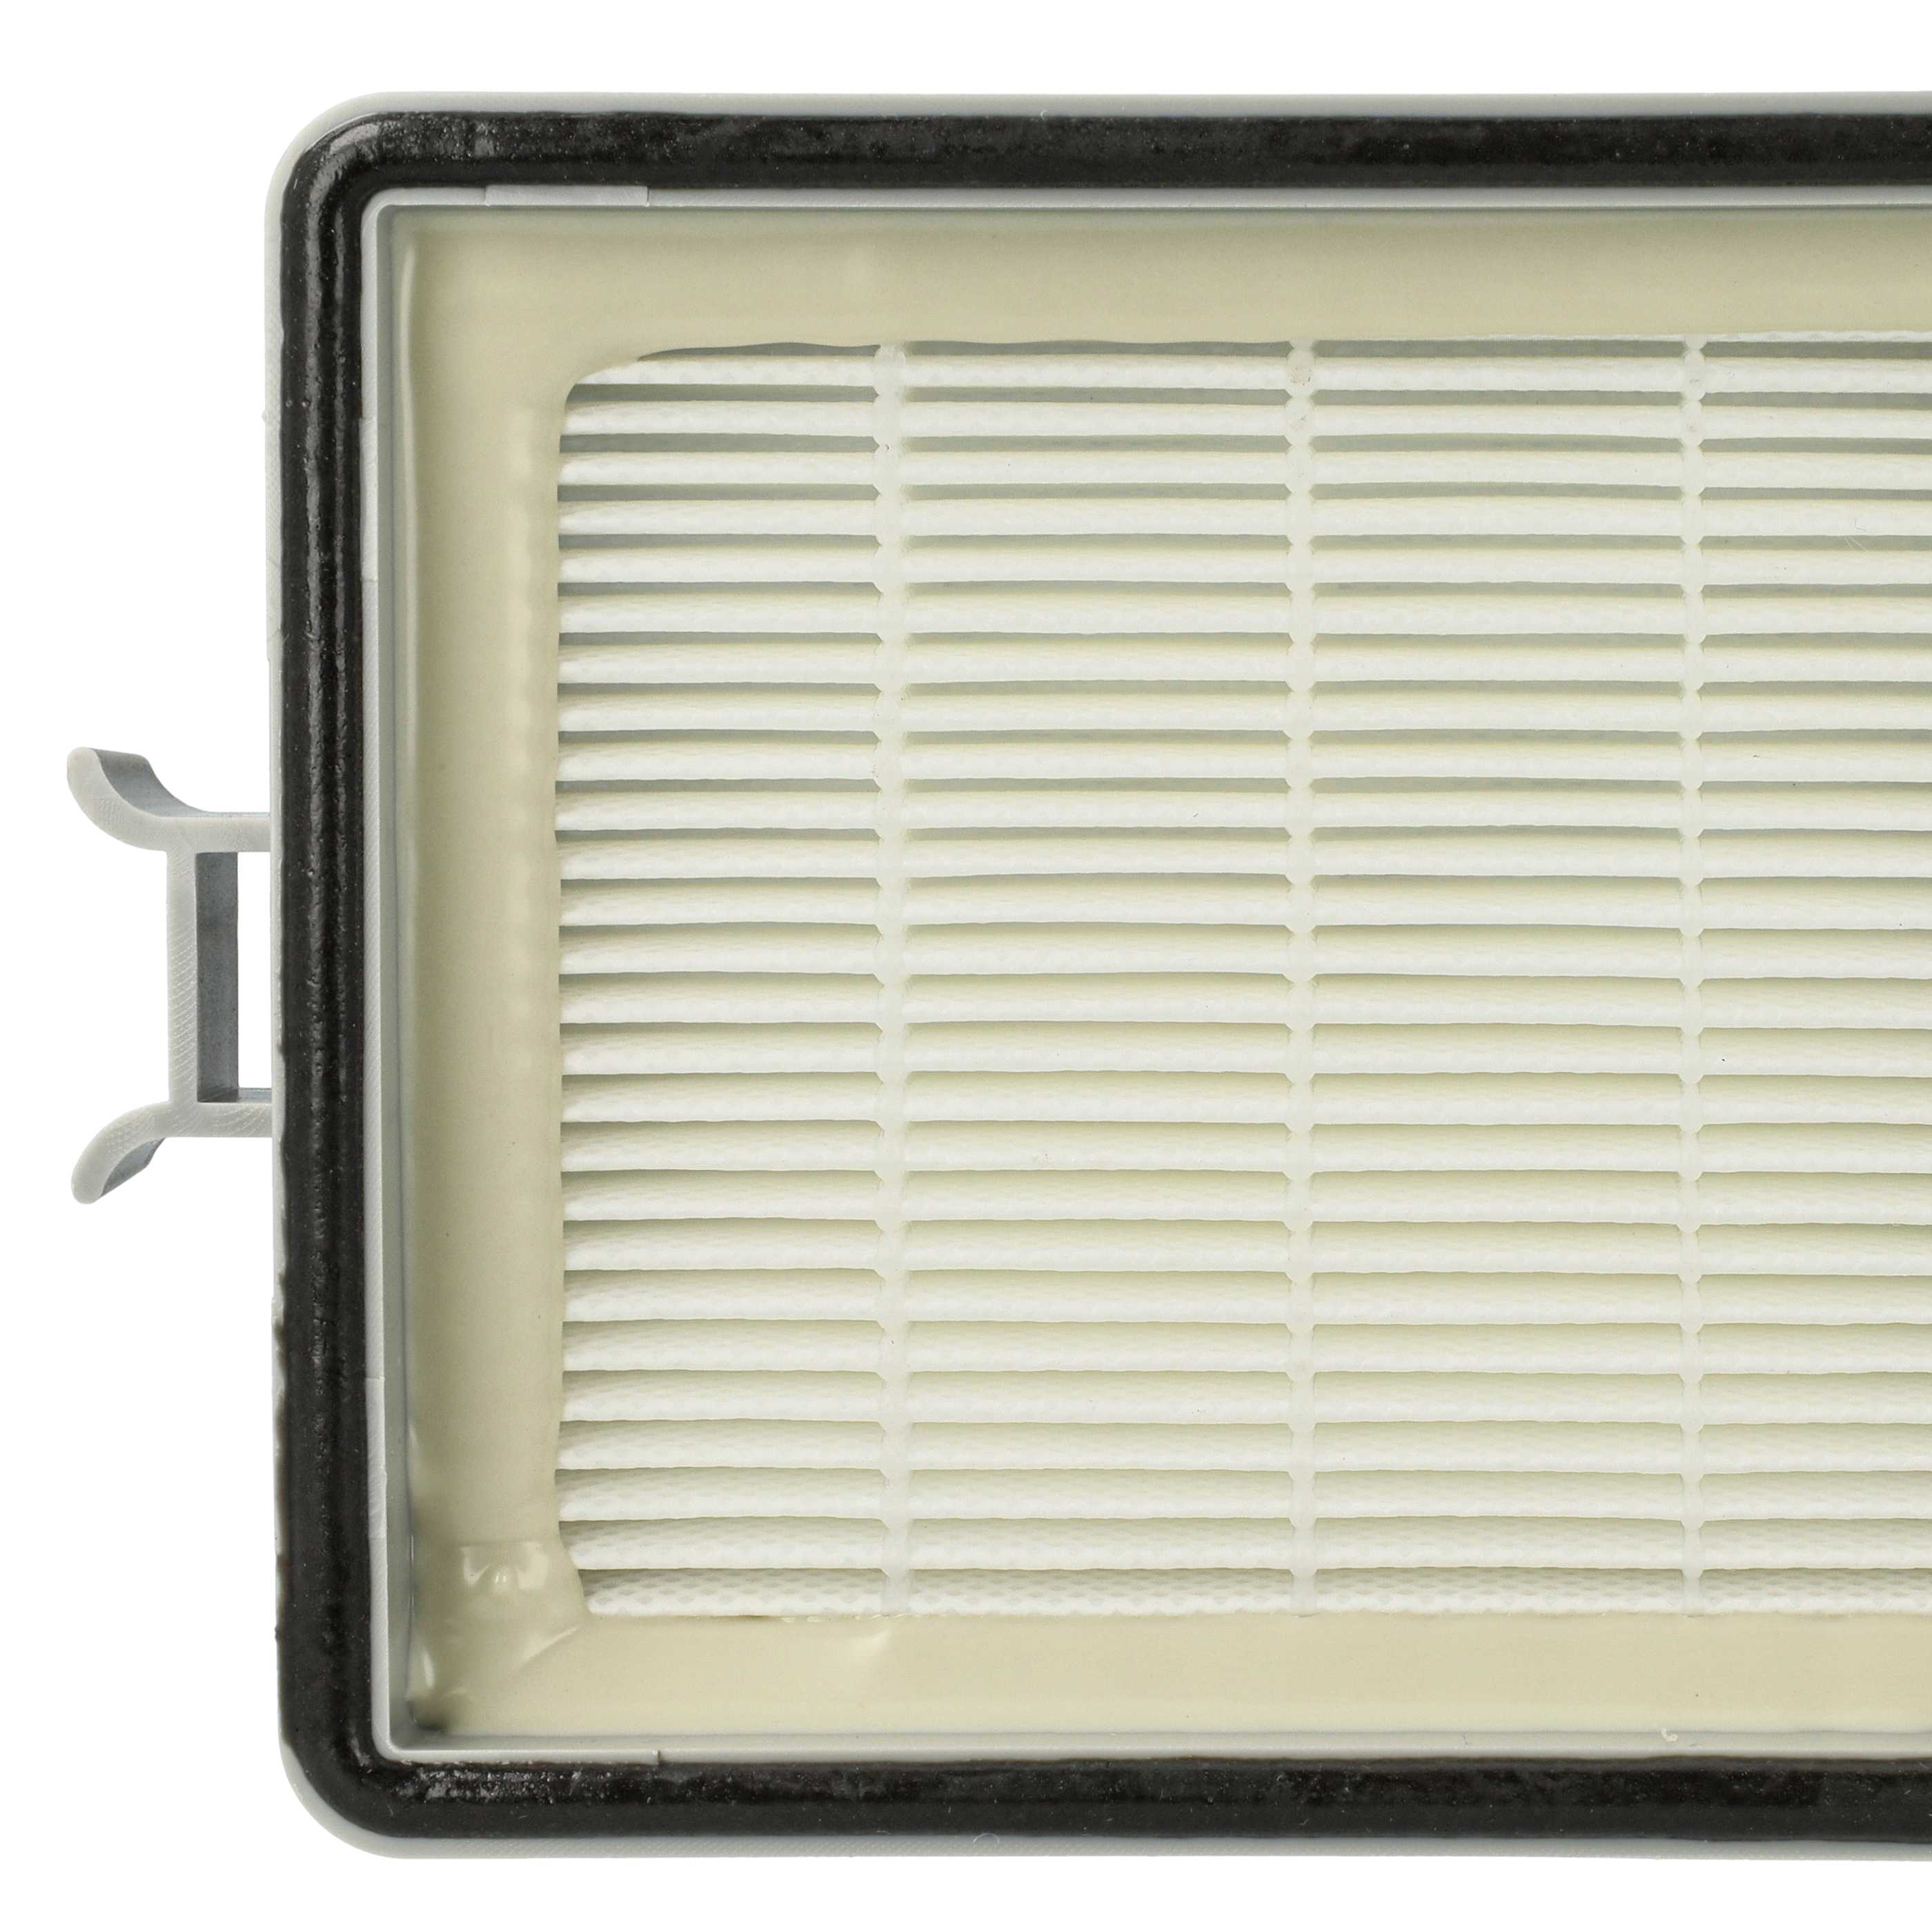 Filtro per aspirapolvere Lux Intelligence / S 115 - filtro HEPA post-motore, bianco / grigio